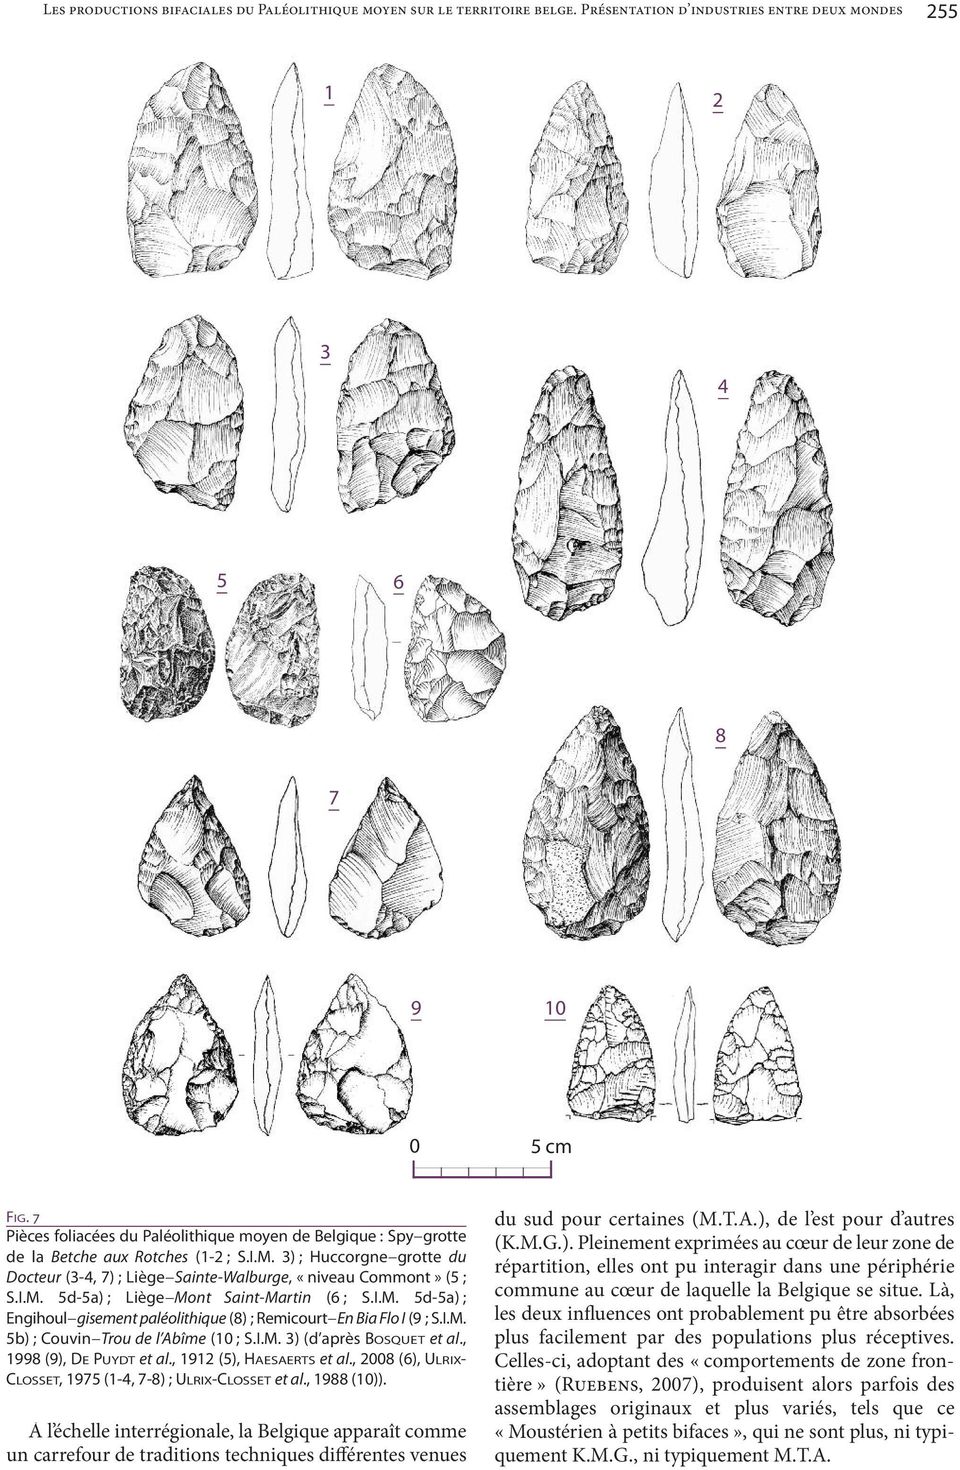 I.M. 5d-5a) ; Engihoul gisement paléolithique (8) ; Remicourt En Bia Flo I (9 ; S.I.M. 5b) ; Couvin Trou de l Abîme (10 ; S.I.M. 3) (d après BOSQUET et al., 1998 (9), DE PUYDT et al.